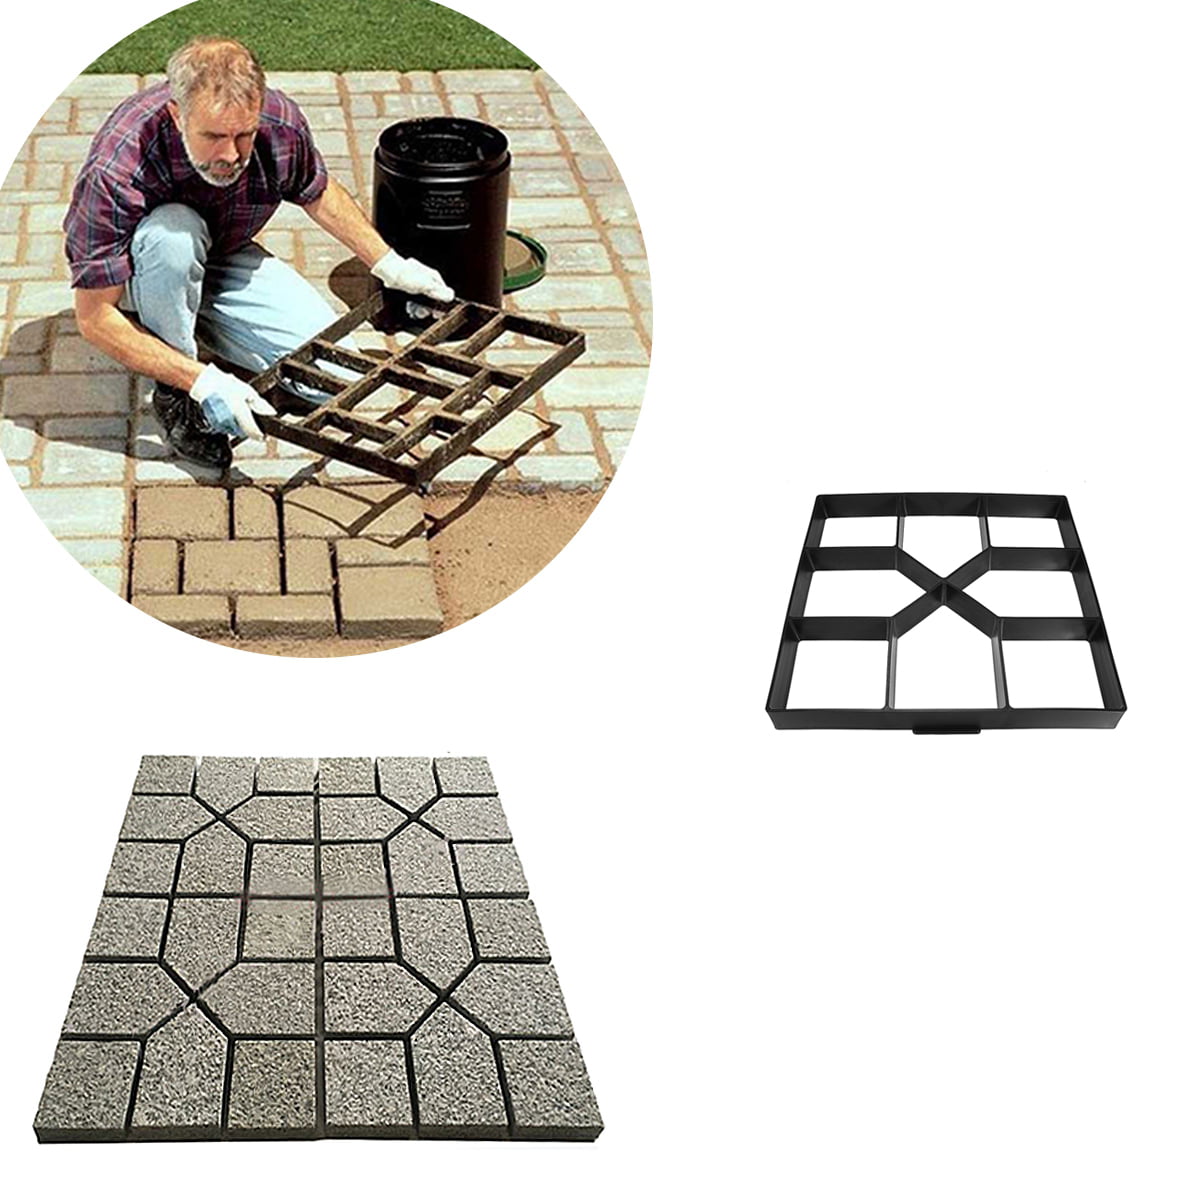 10 Grids Garden Paving Brick Mould Patio Road Concrete Tile Path Pattern Mould